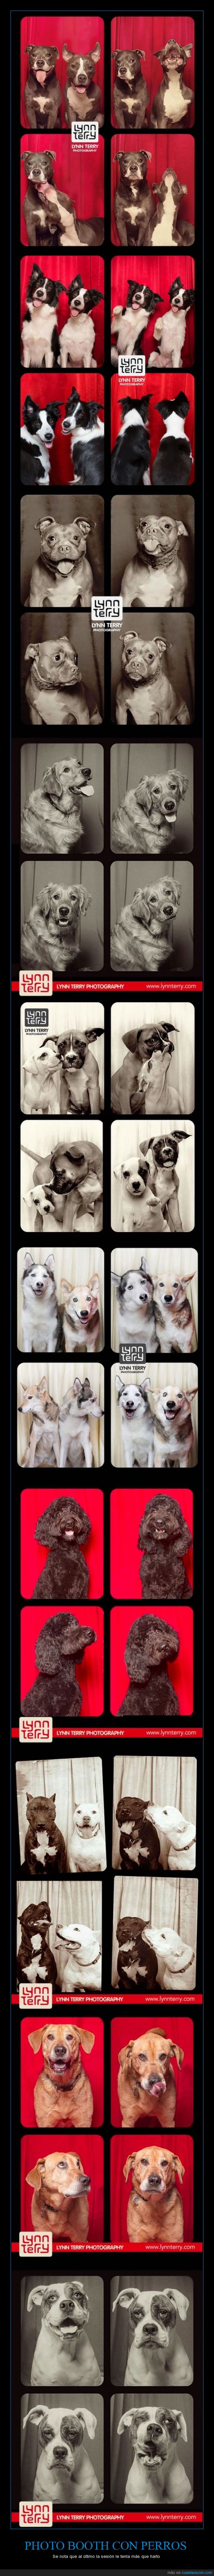 Perros,Photo Booth,fotos,cachorros,fondos,efectos,fotografías